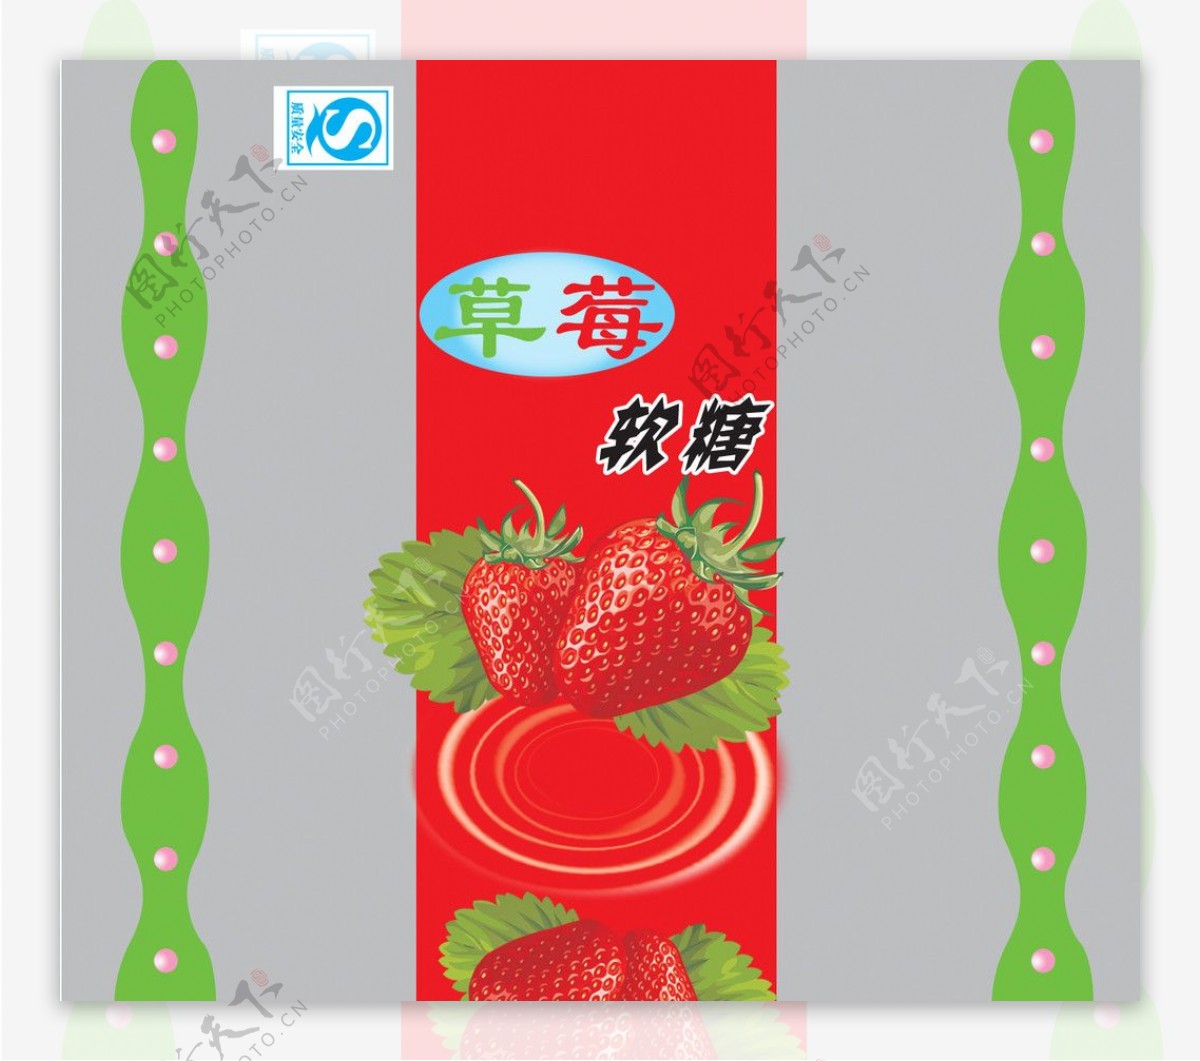 草莓味软糖图片